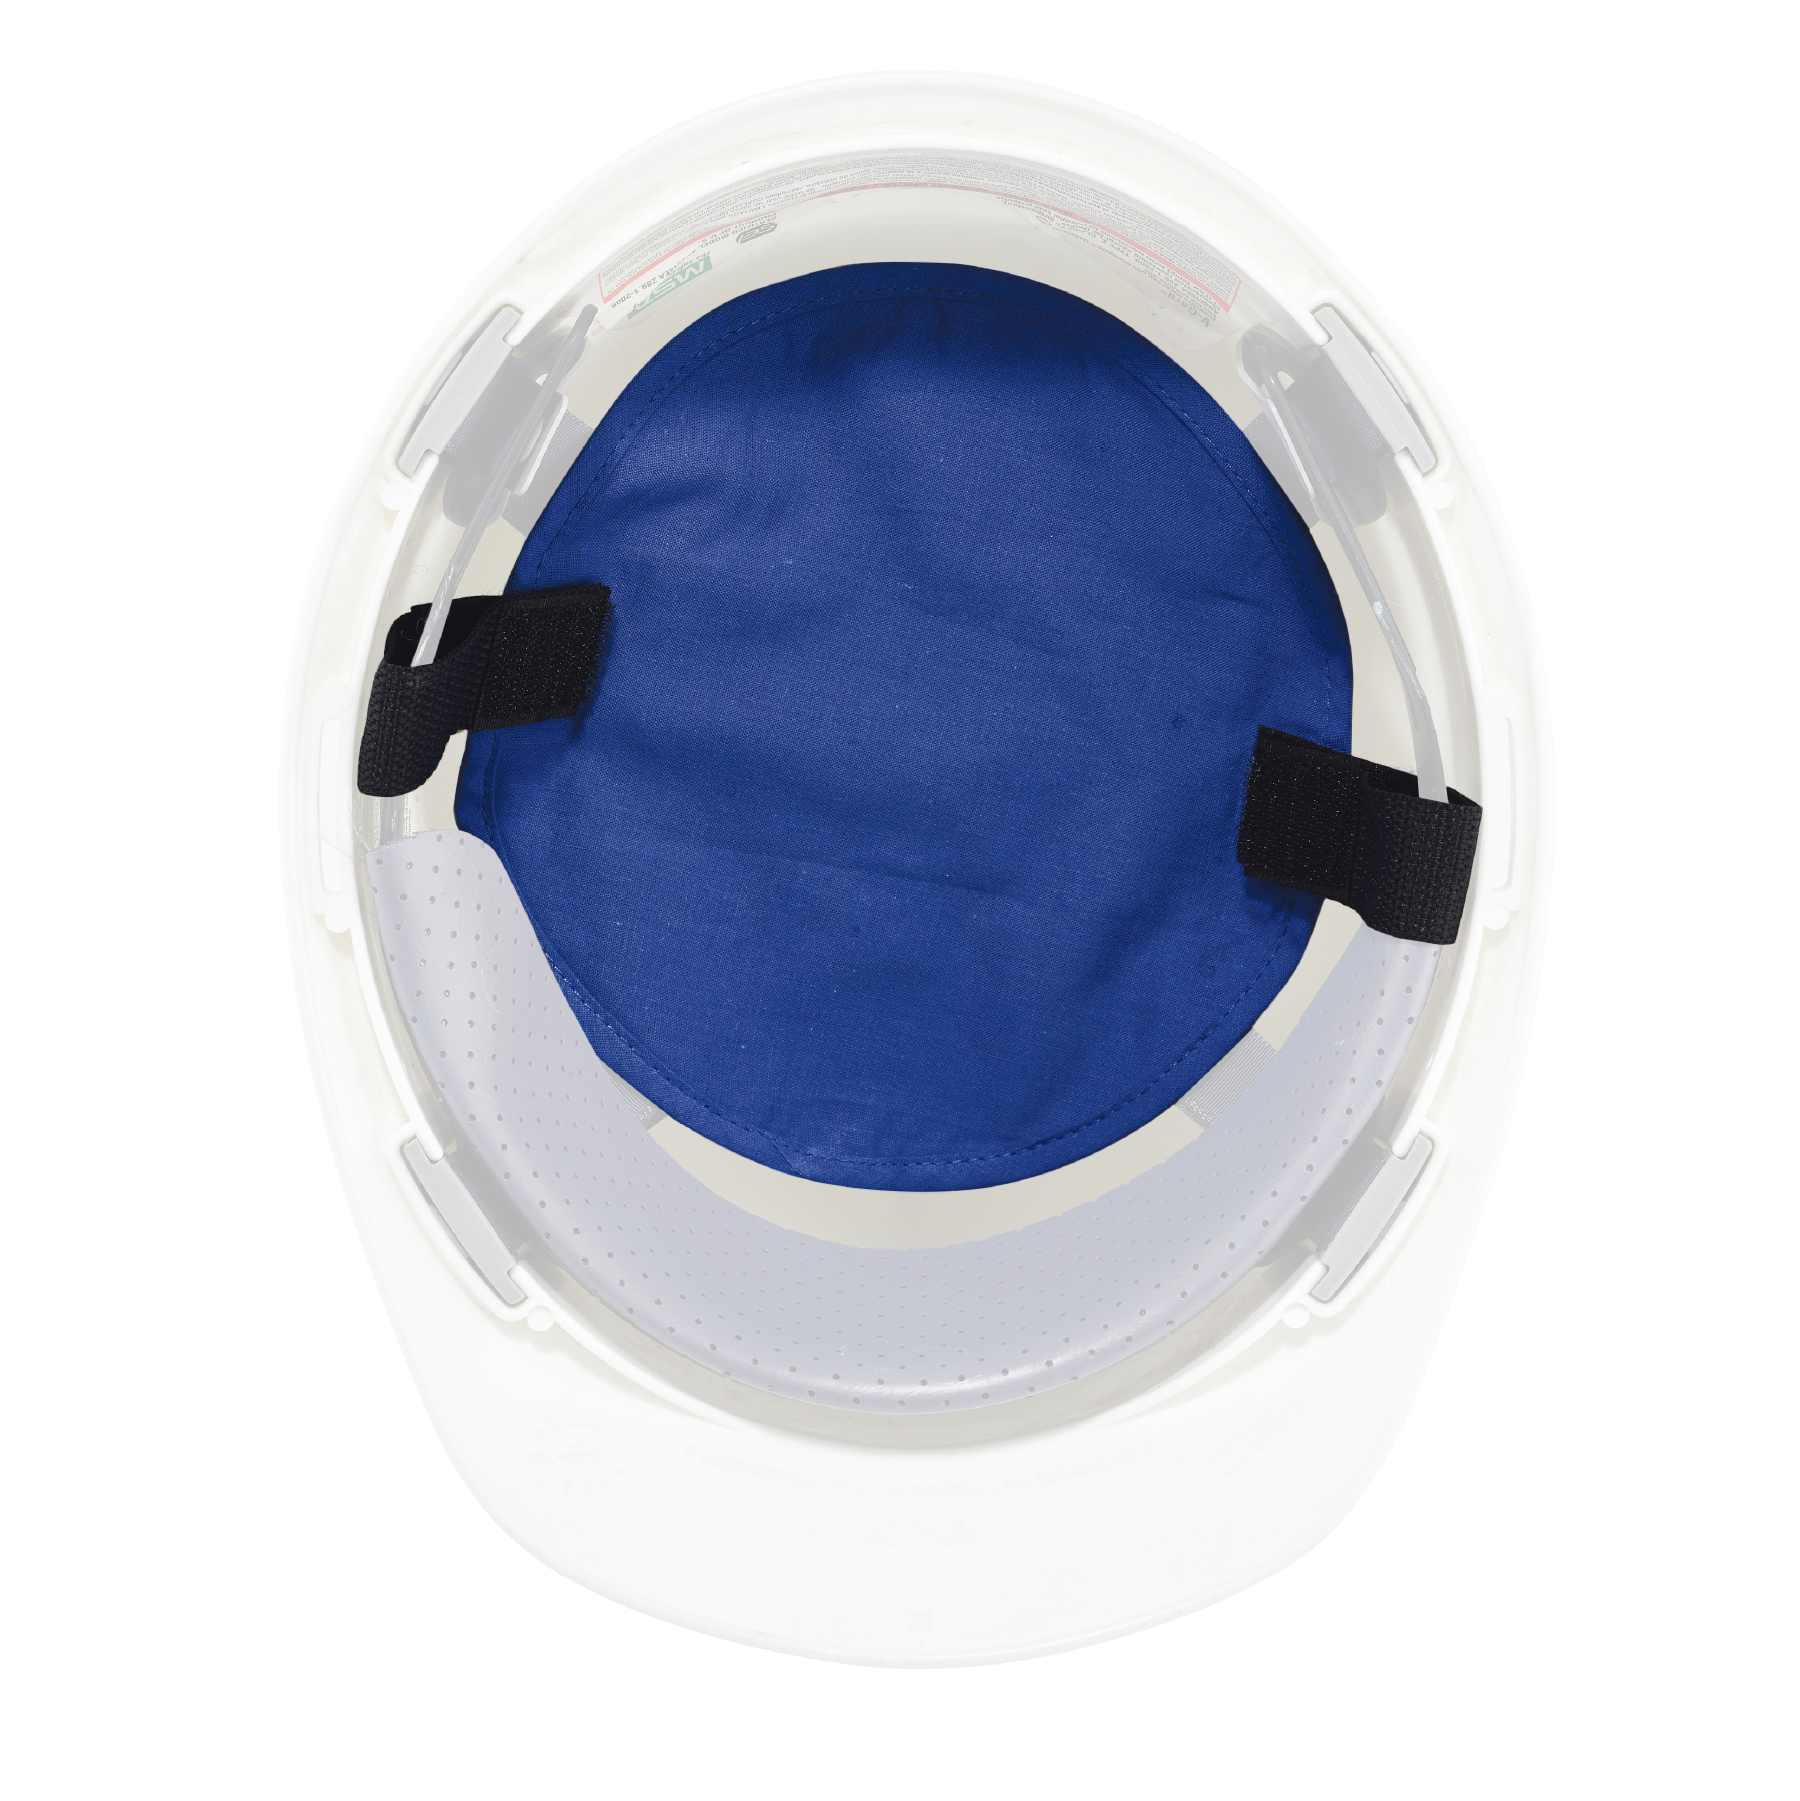 6290 Helmkissenauflage Helm Wärmeisolierauflage Am Cooling Pad Mütze Sicherheit 